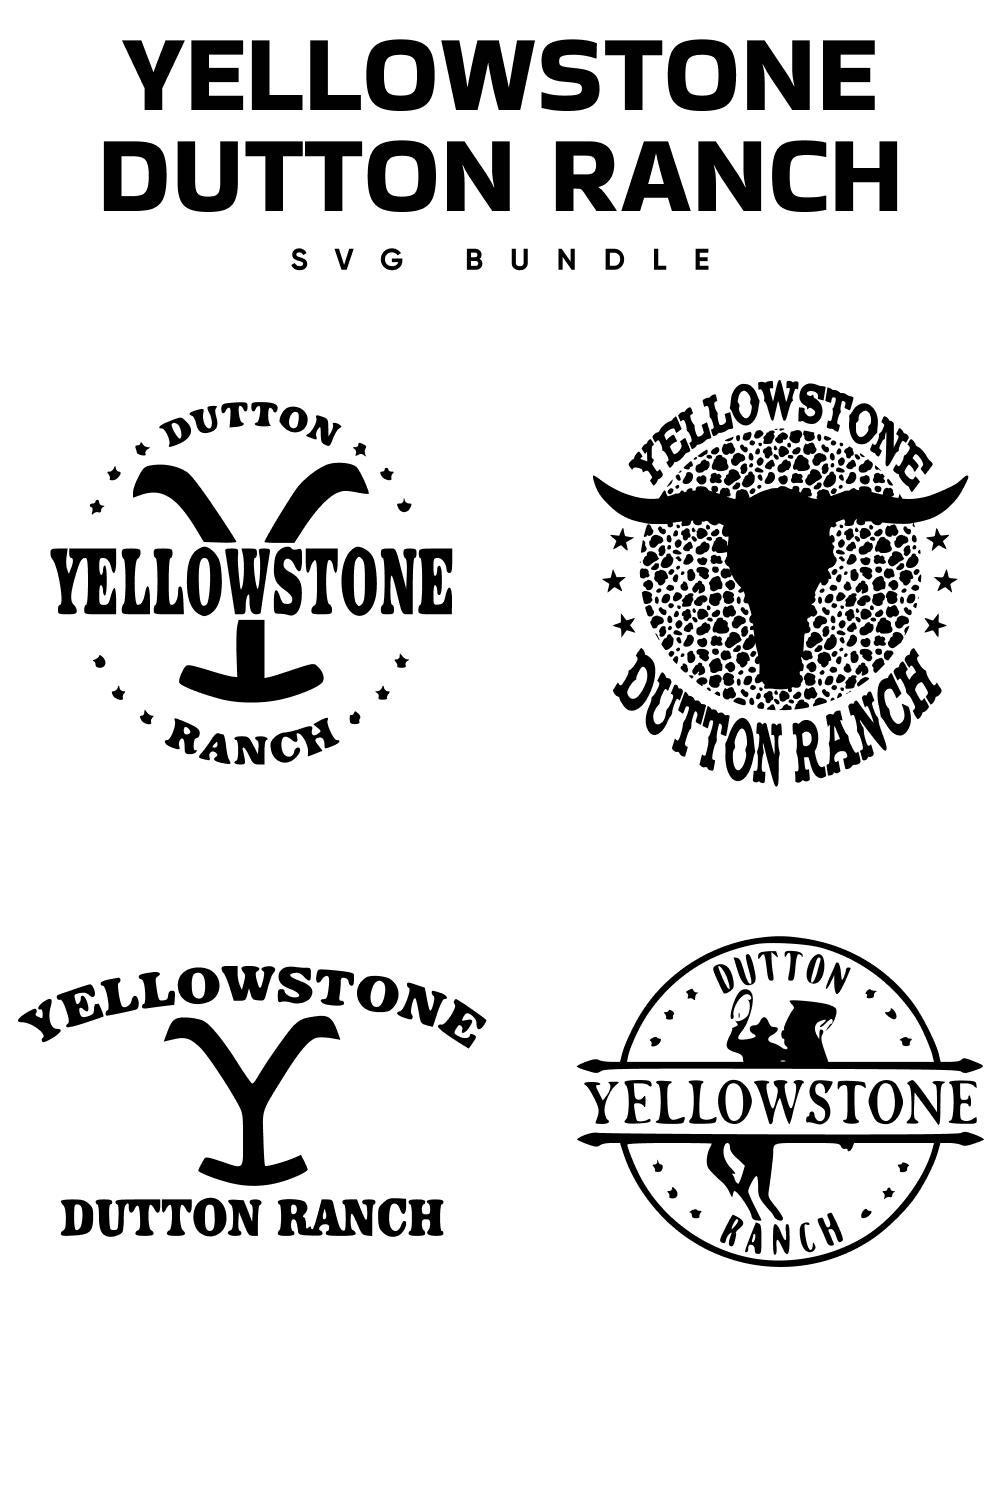 01. yellowstone dutton ranch svg bundle 1000 x 1500 547